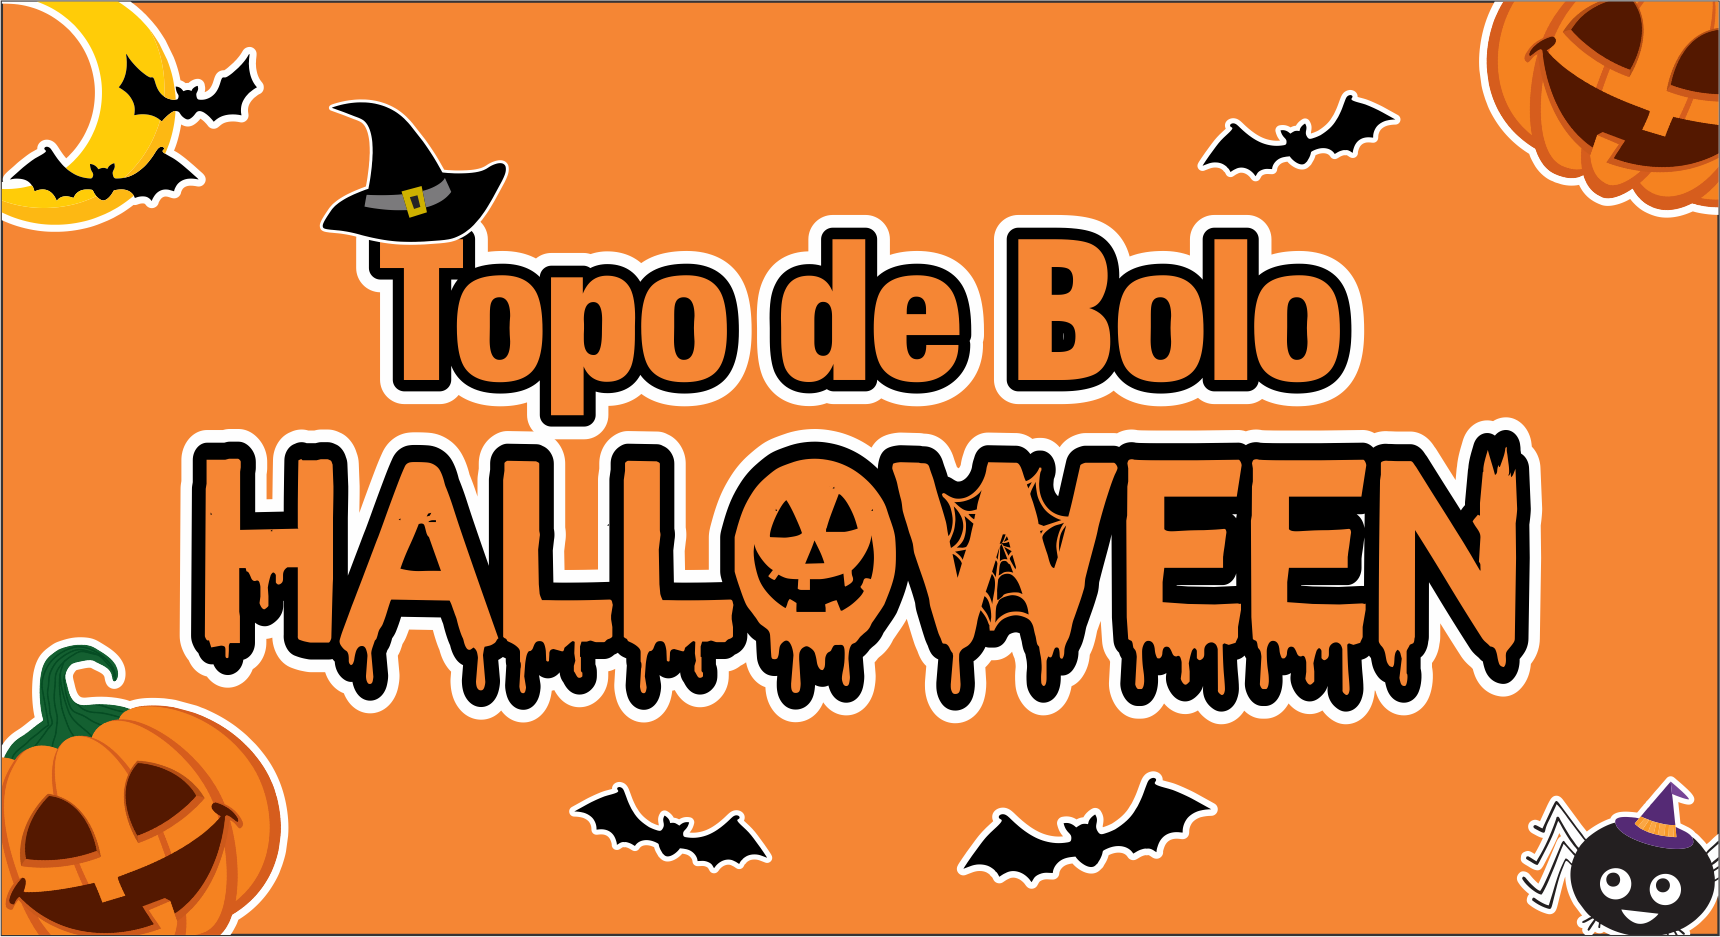 Capa Topo de bolo halloween - Topo de bolo Halloween pronto para imprimir